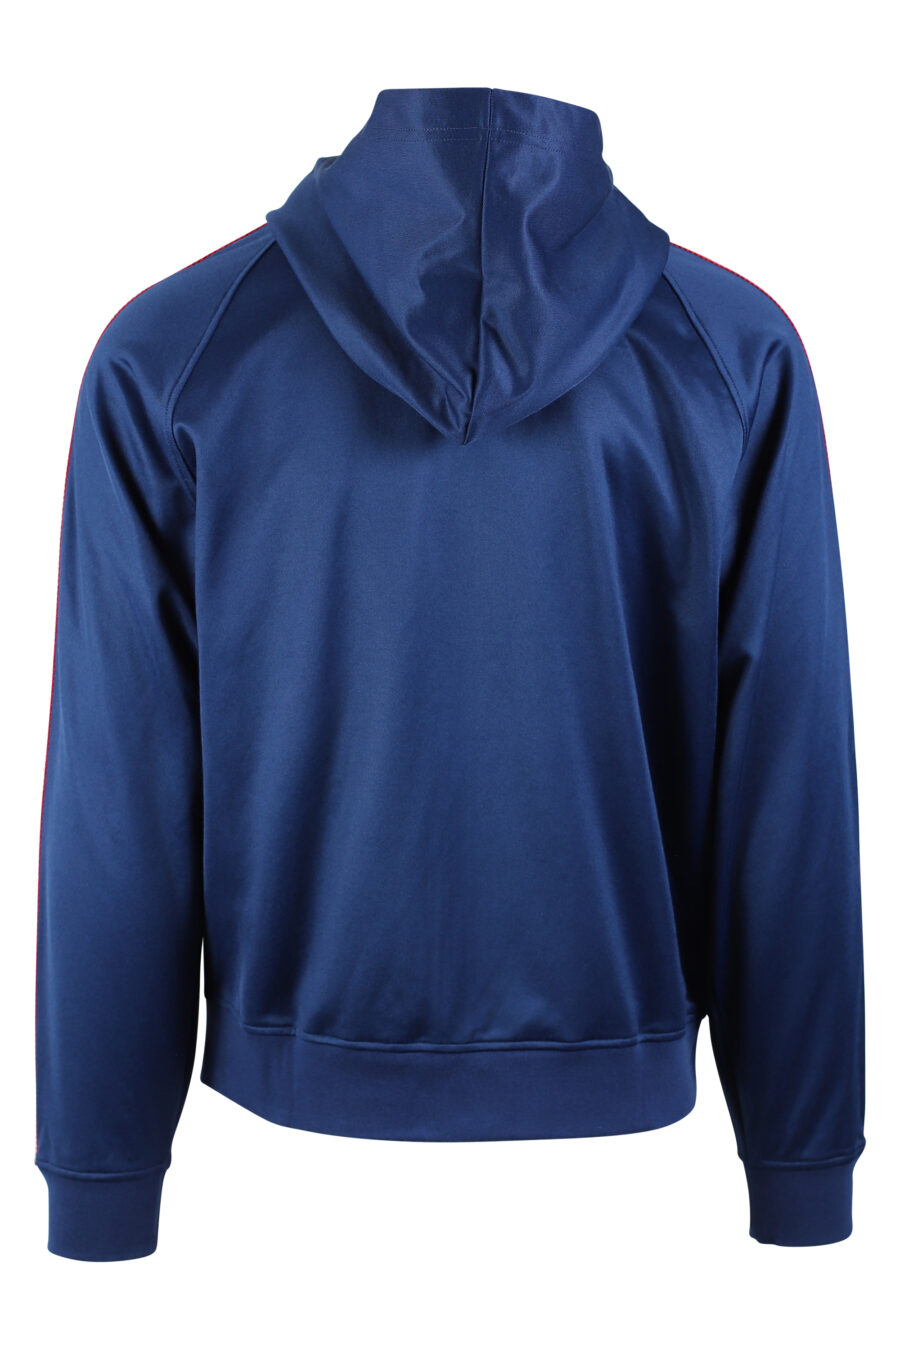 Sweat bleu avec fermeture éclair et logo latéral rouge - IMG 0546